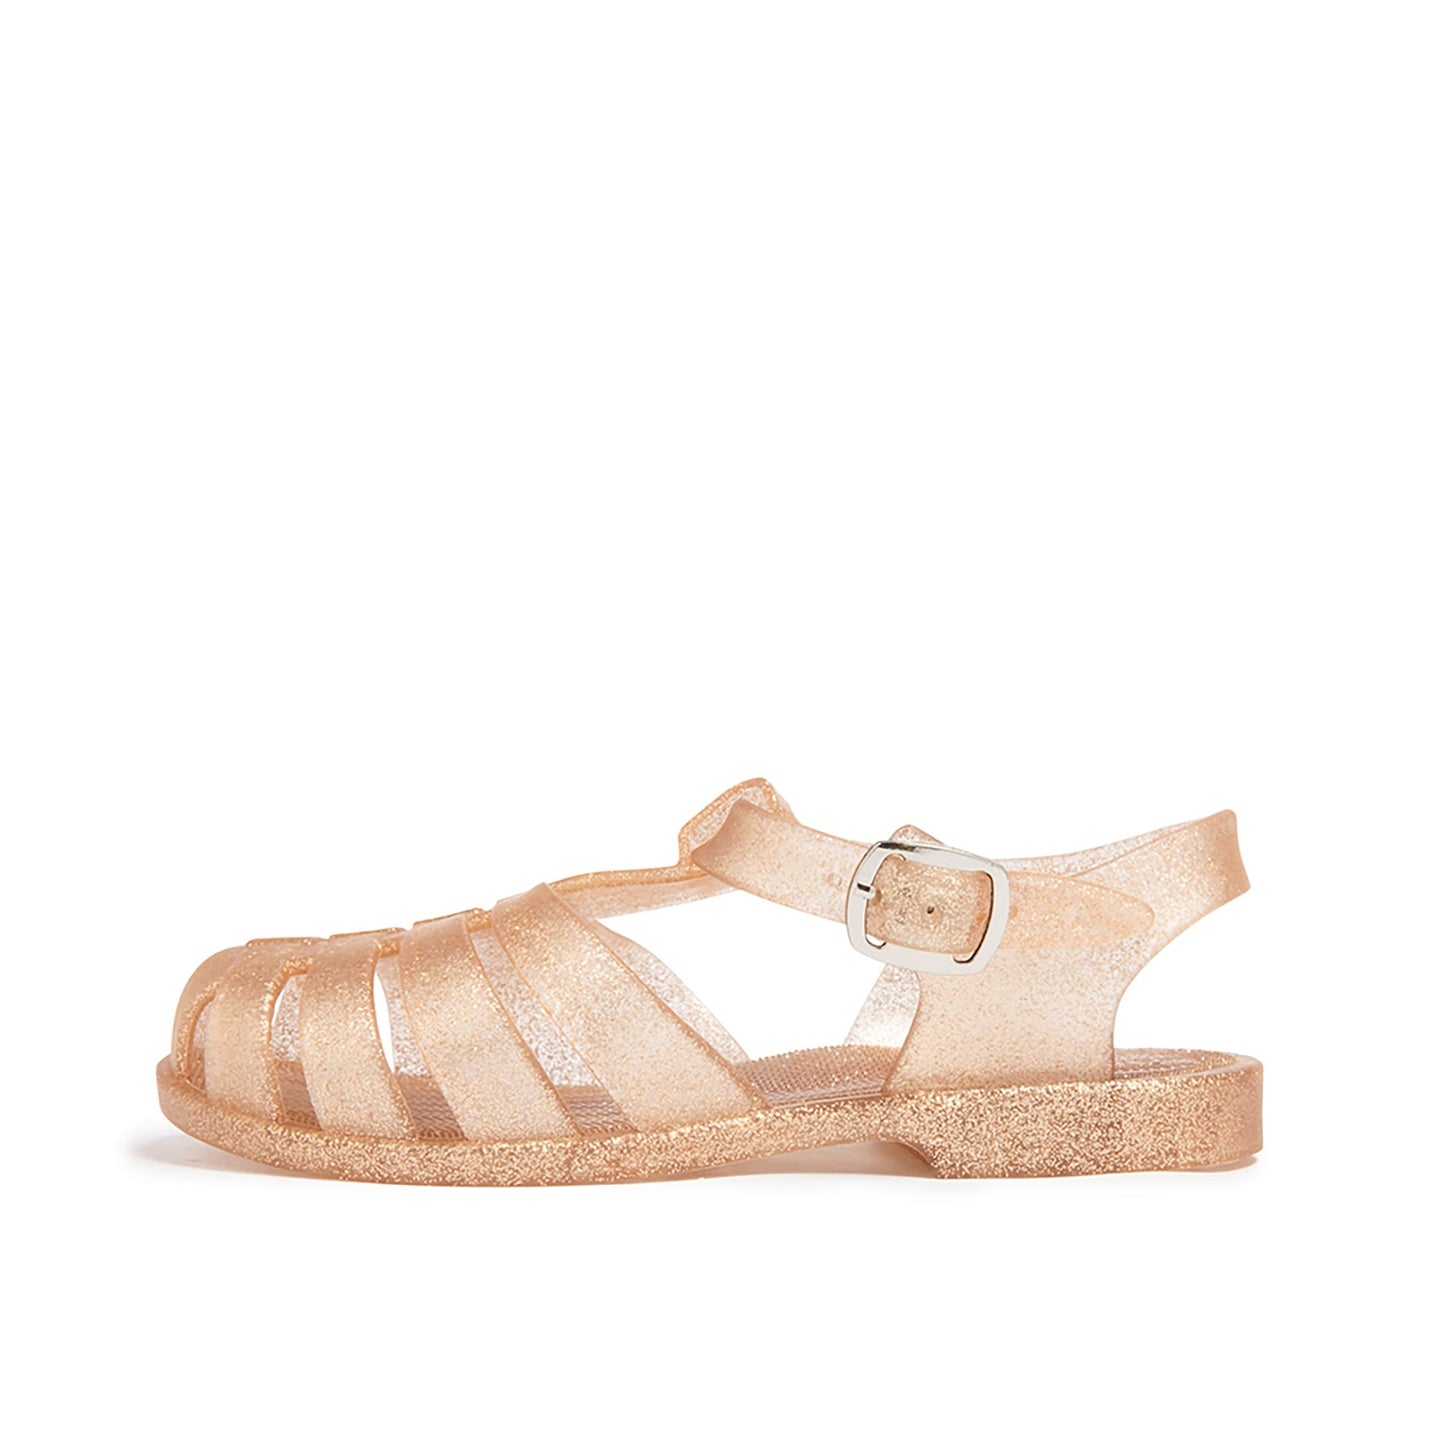 CALI Jelly Sandals - Shop Online | shooshoos.co.za